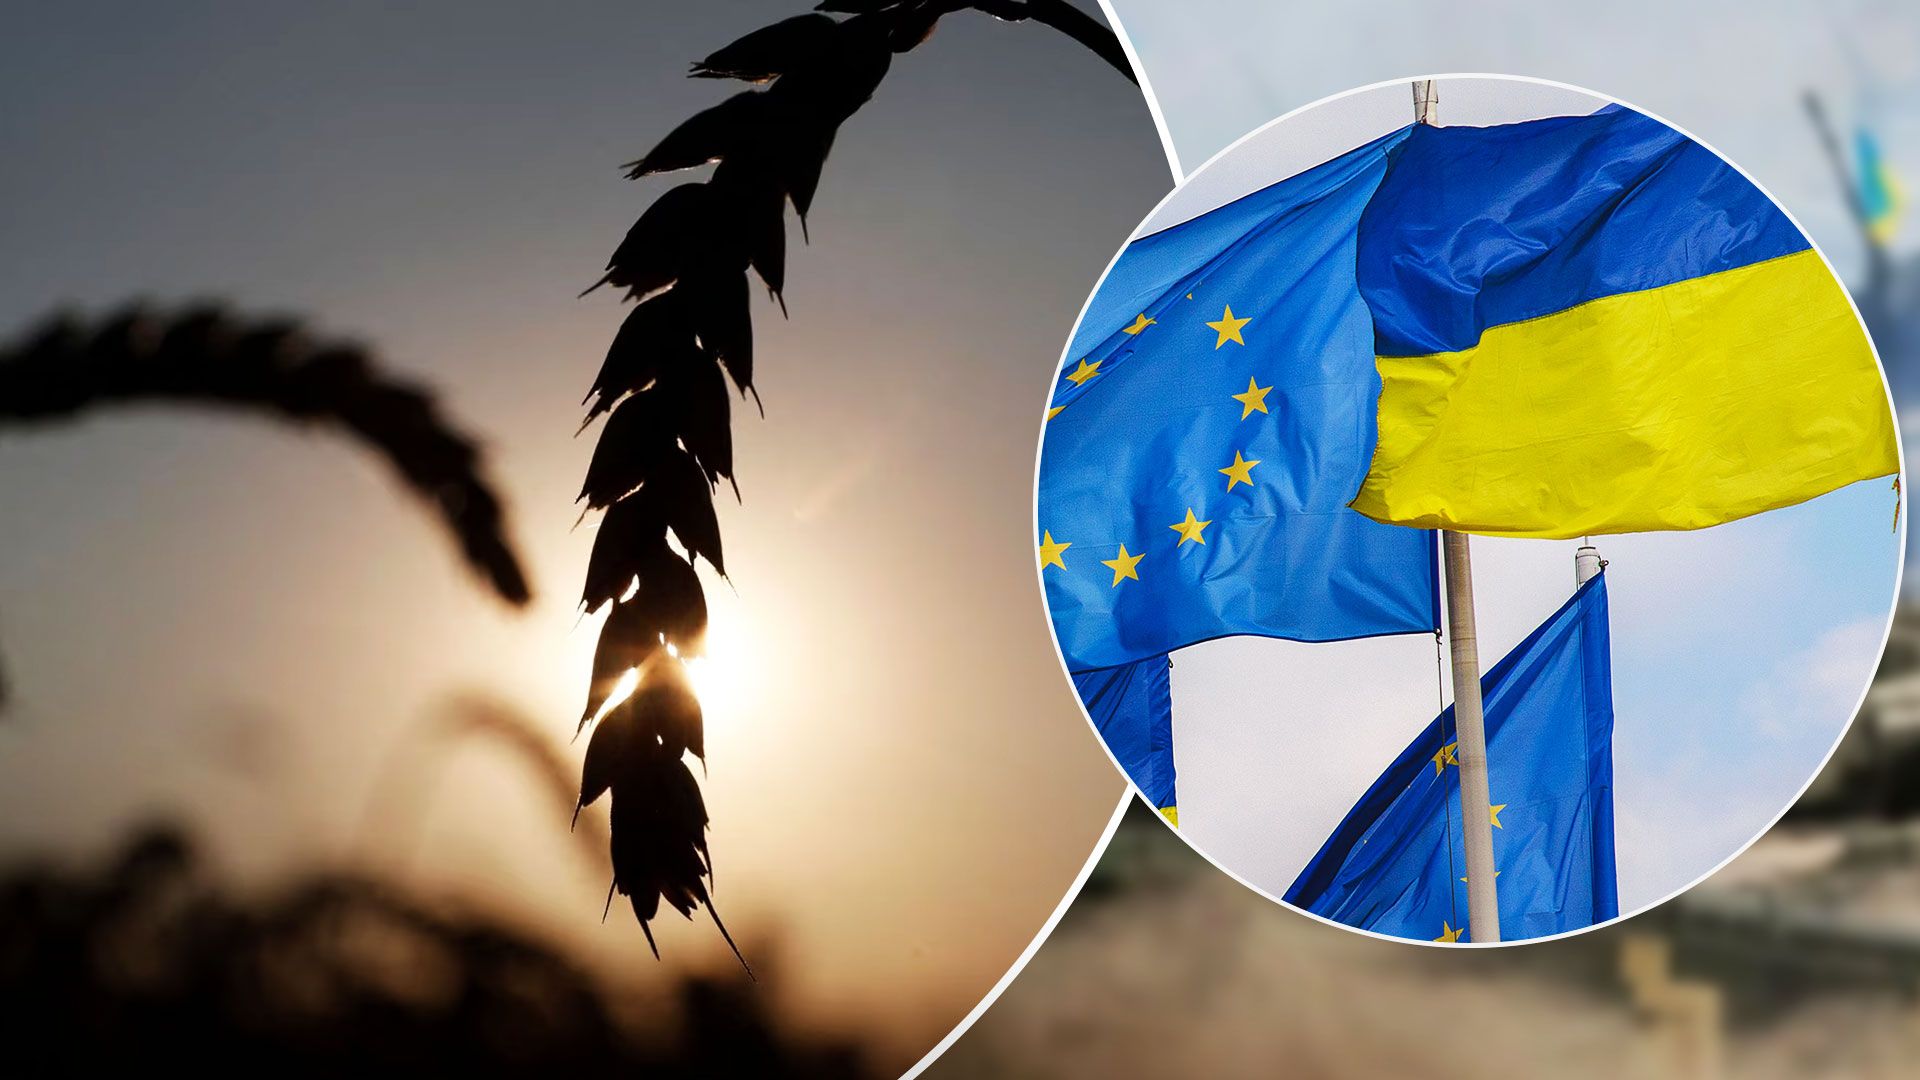 Фермеры из Европы могут блокировать вступление Украины в ЕС - эмбарго на украинское зерно - Экономика